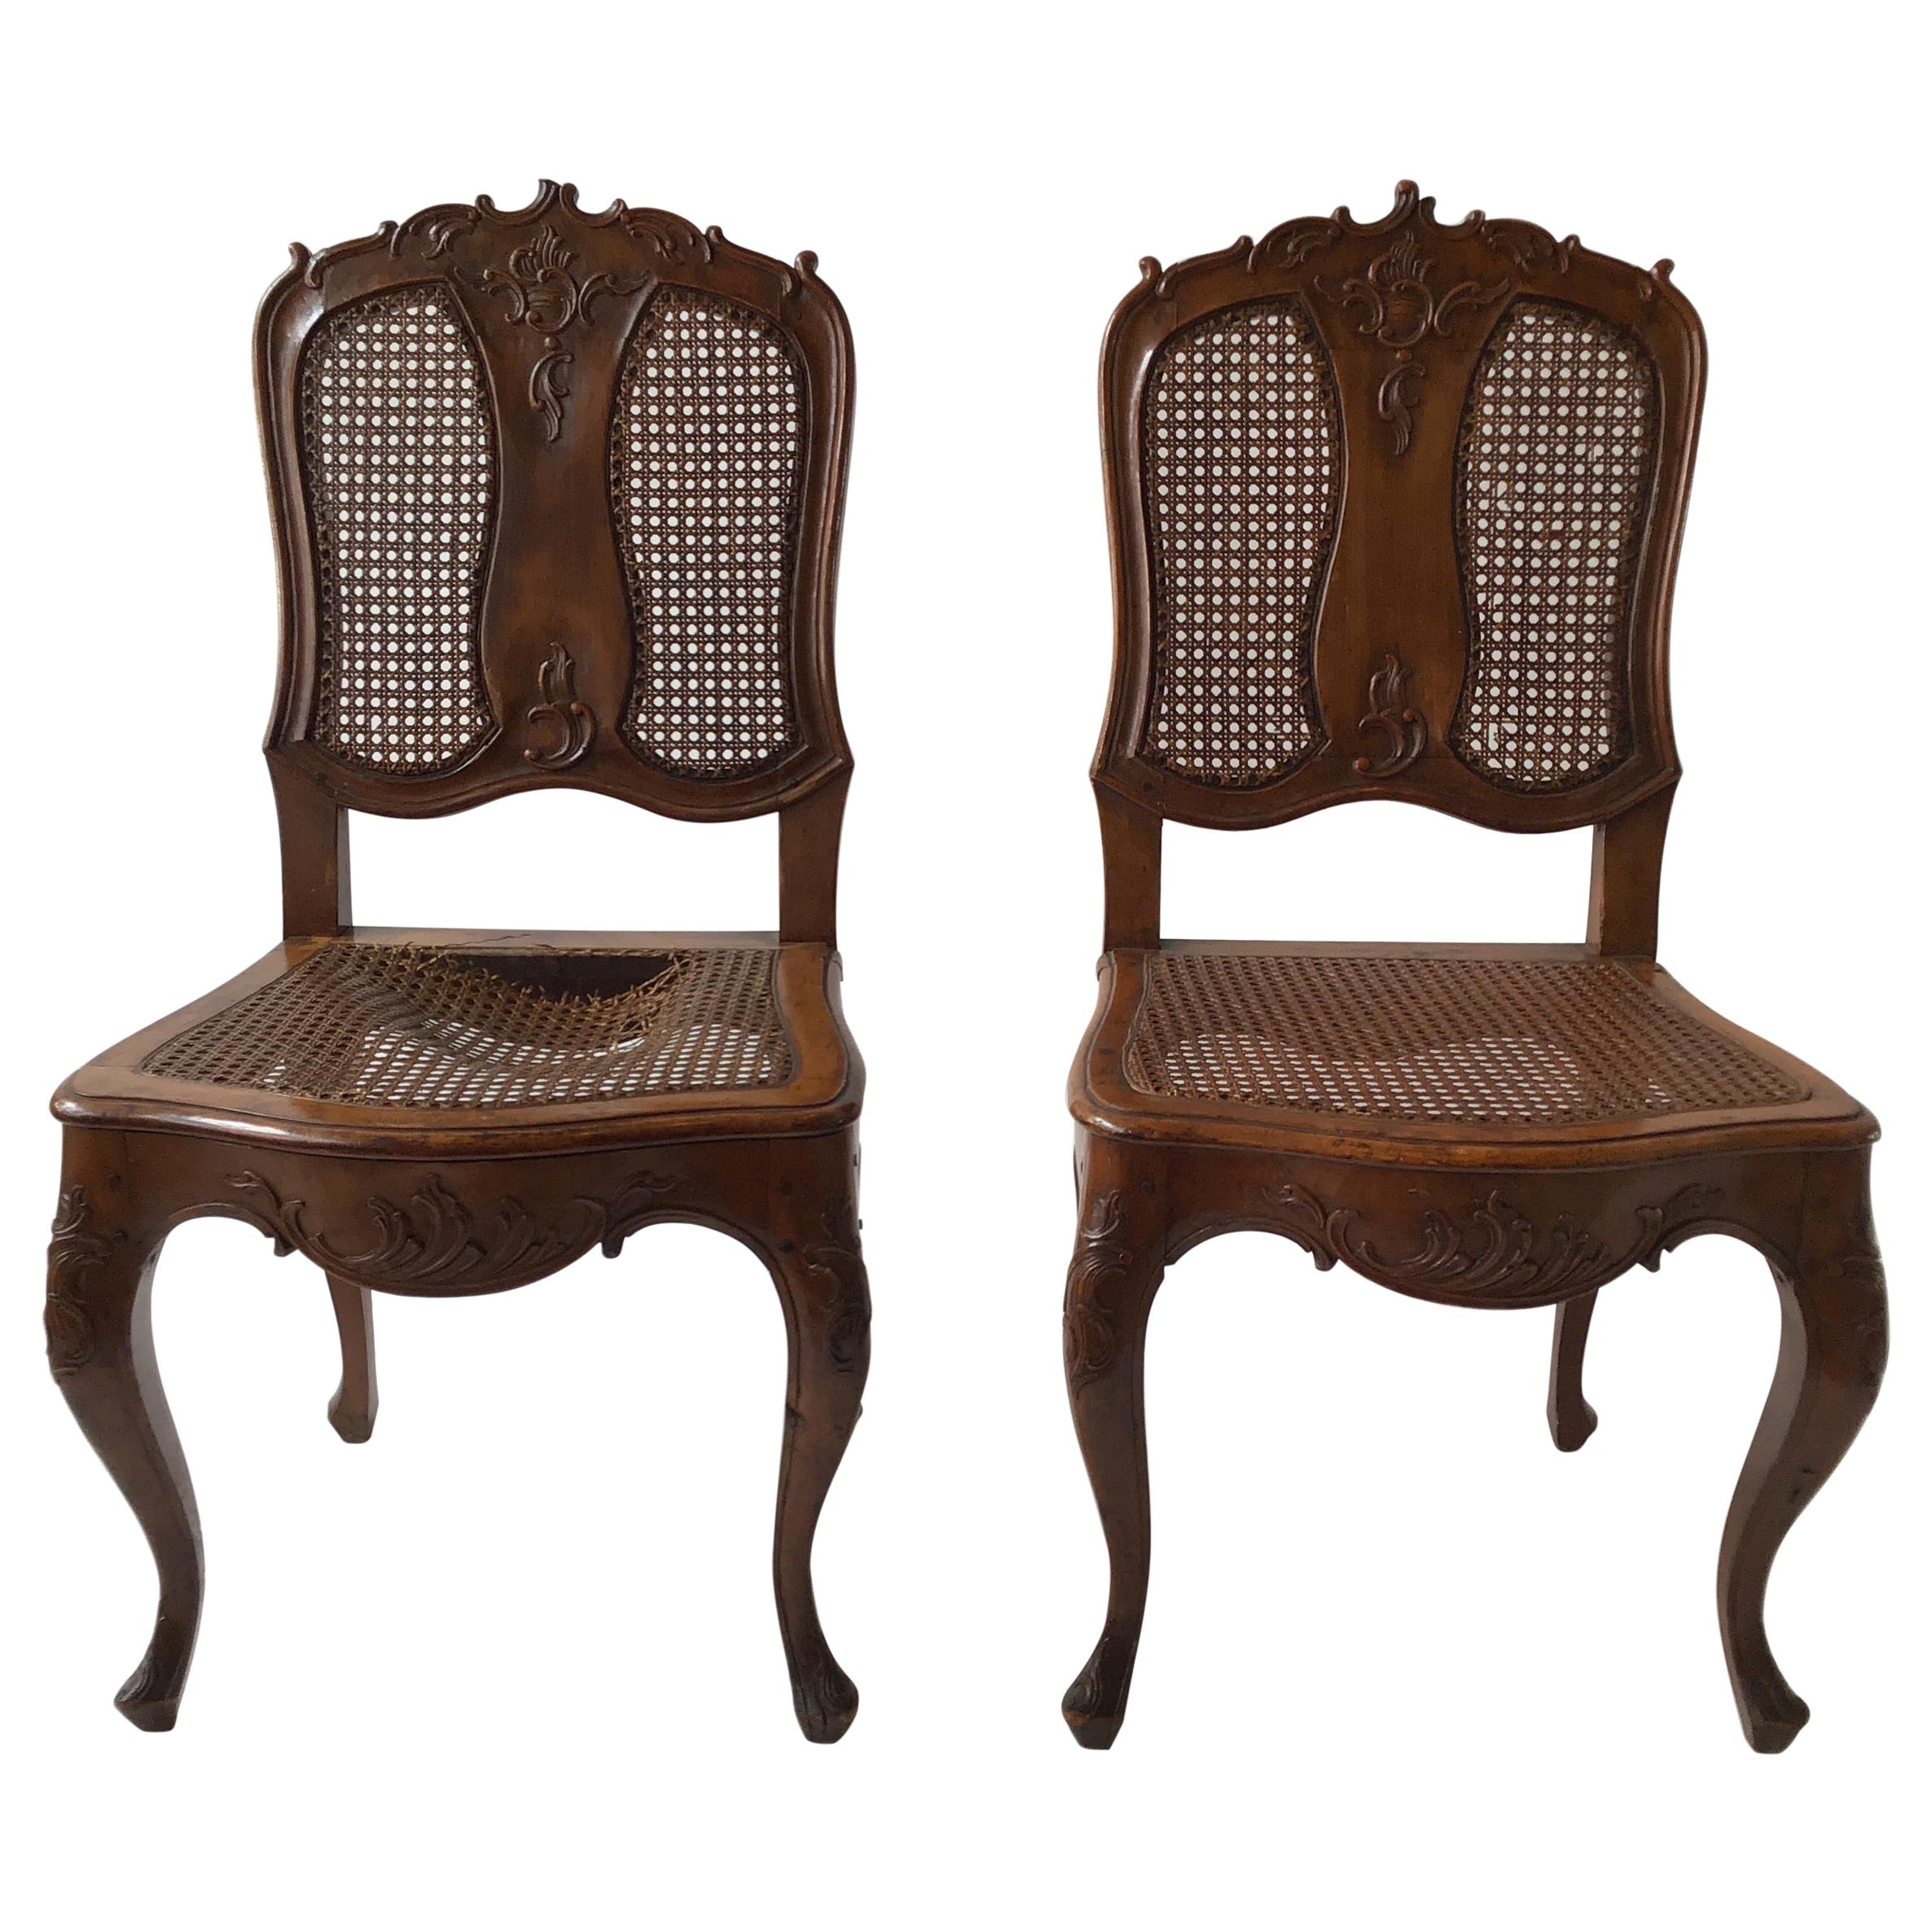 Paire de chaises d'appoint provinciales françaises des années 1880 sculptées à la main